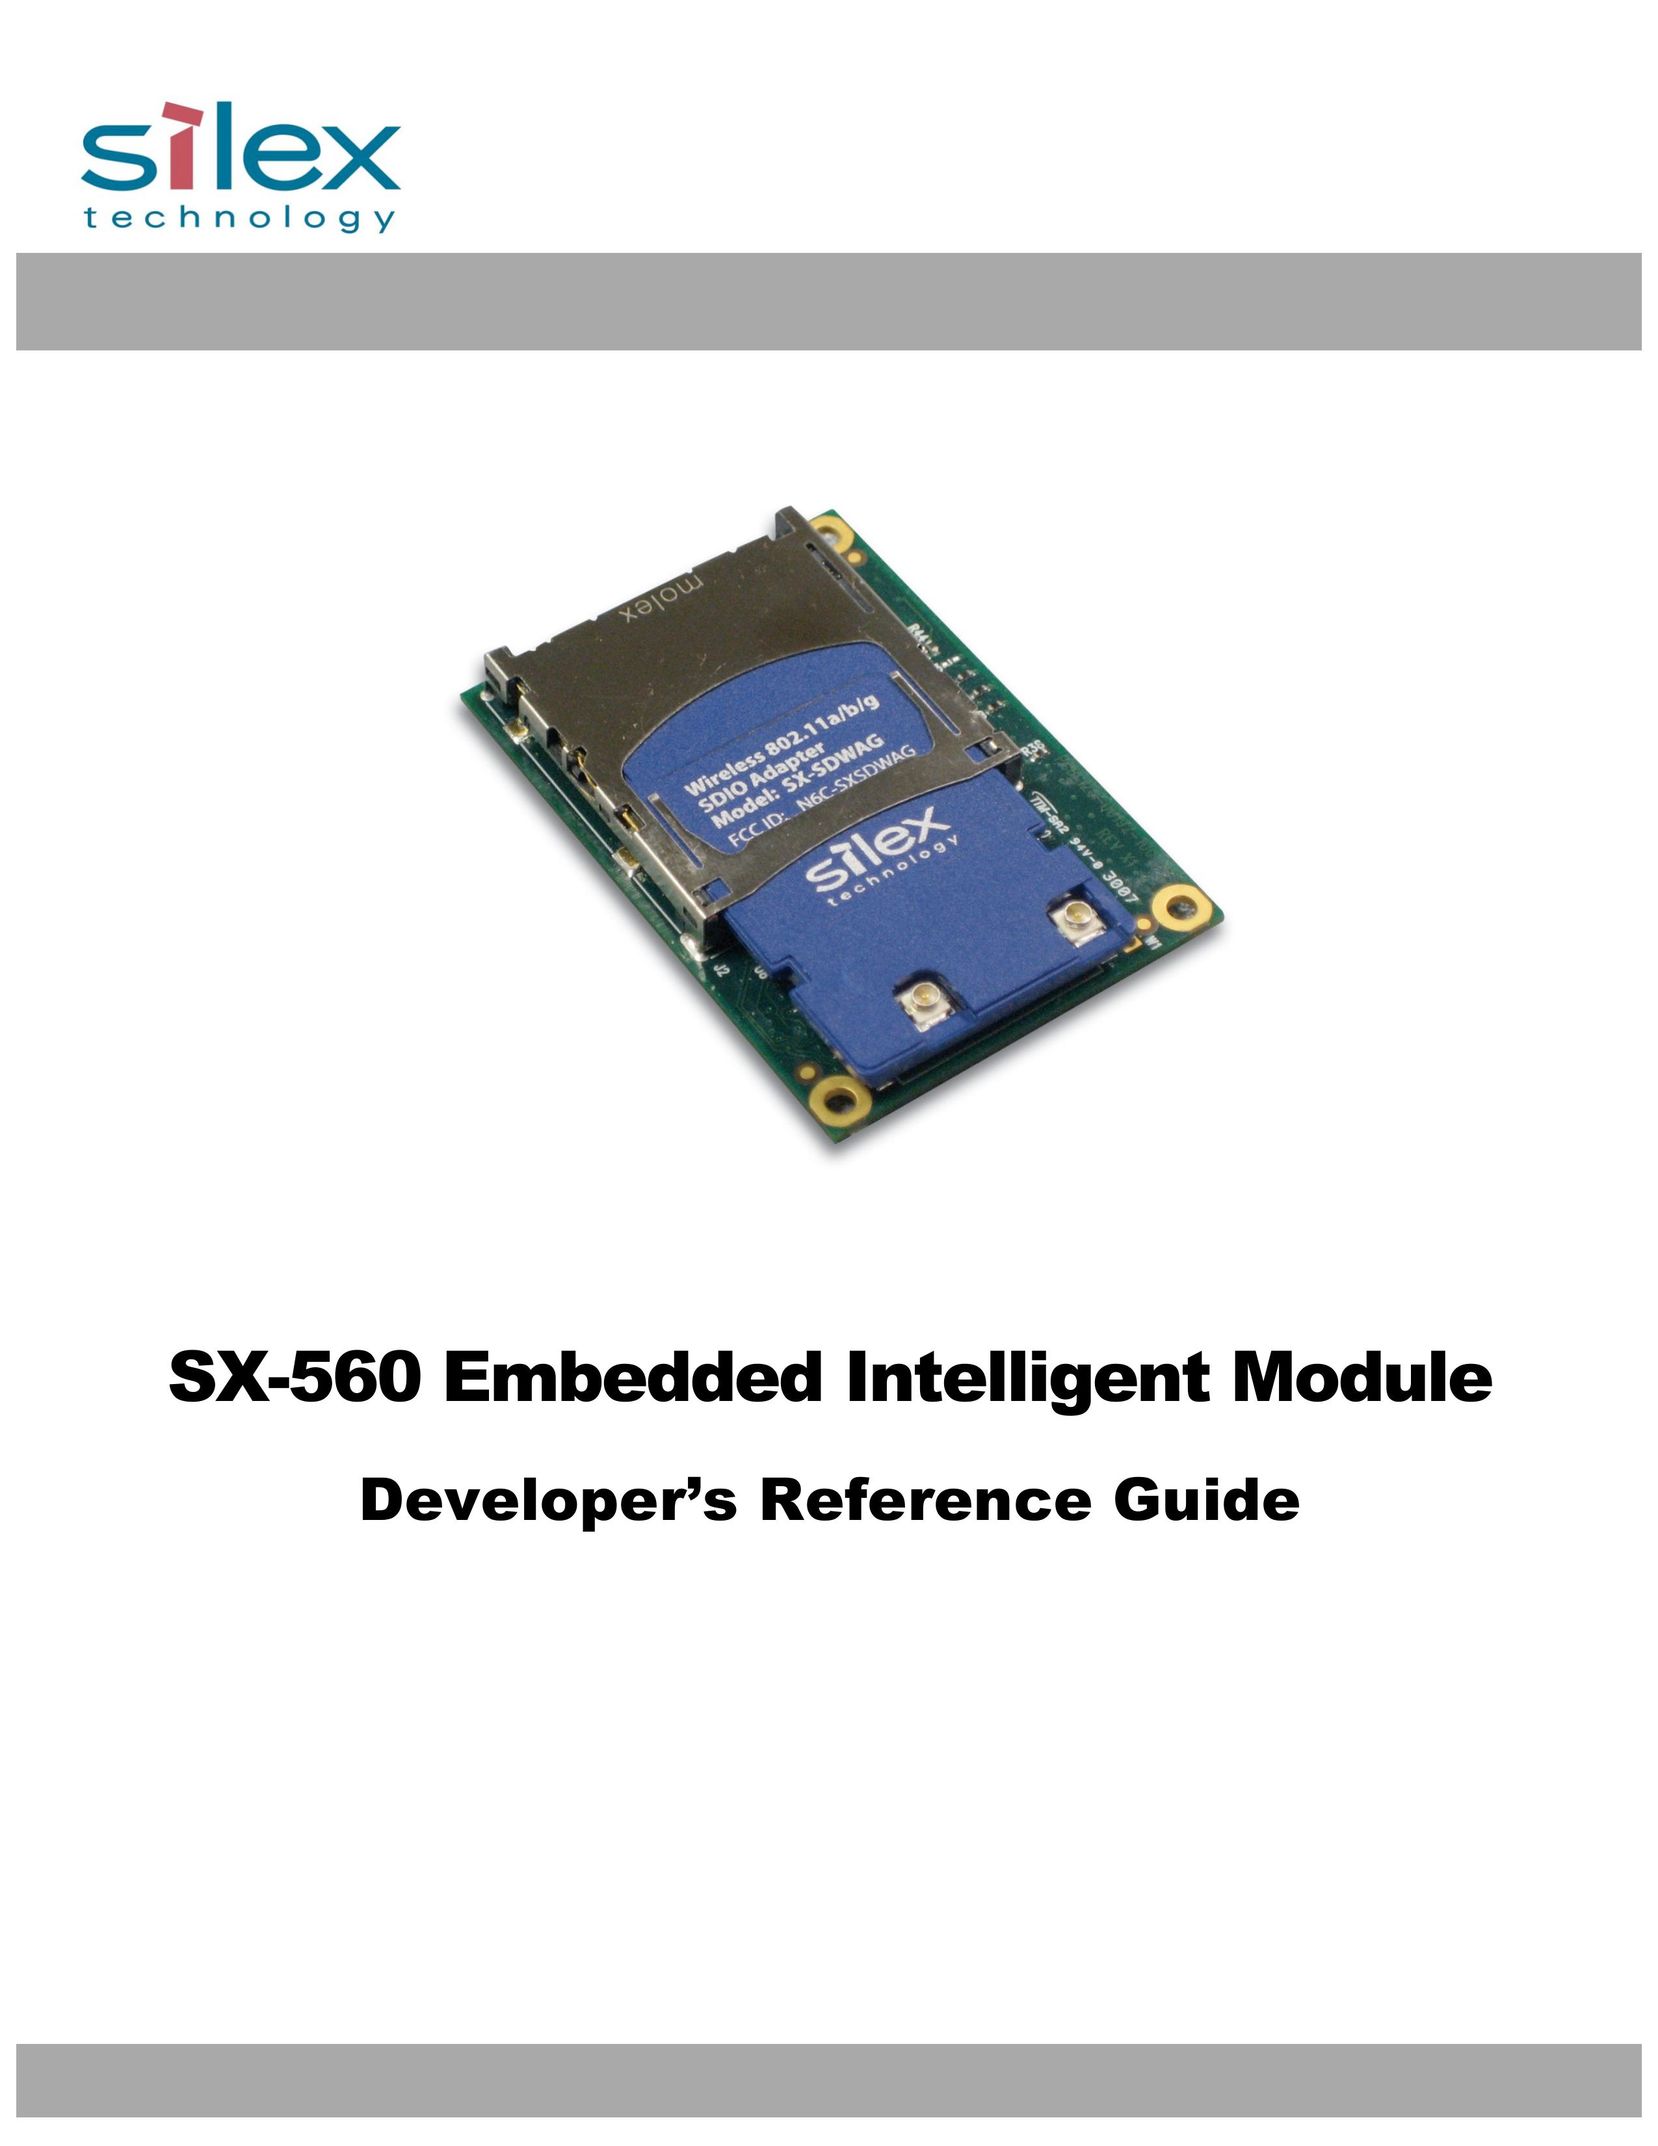 Silex technology SX-560 Network Card User Manual